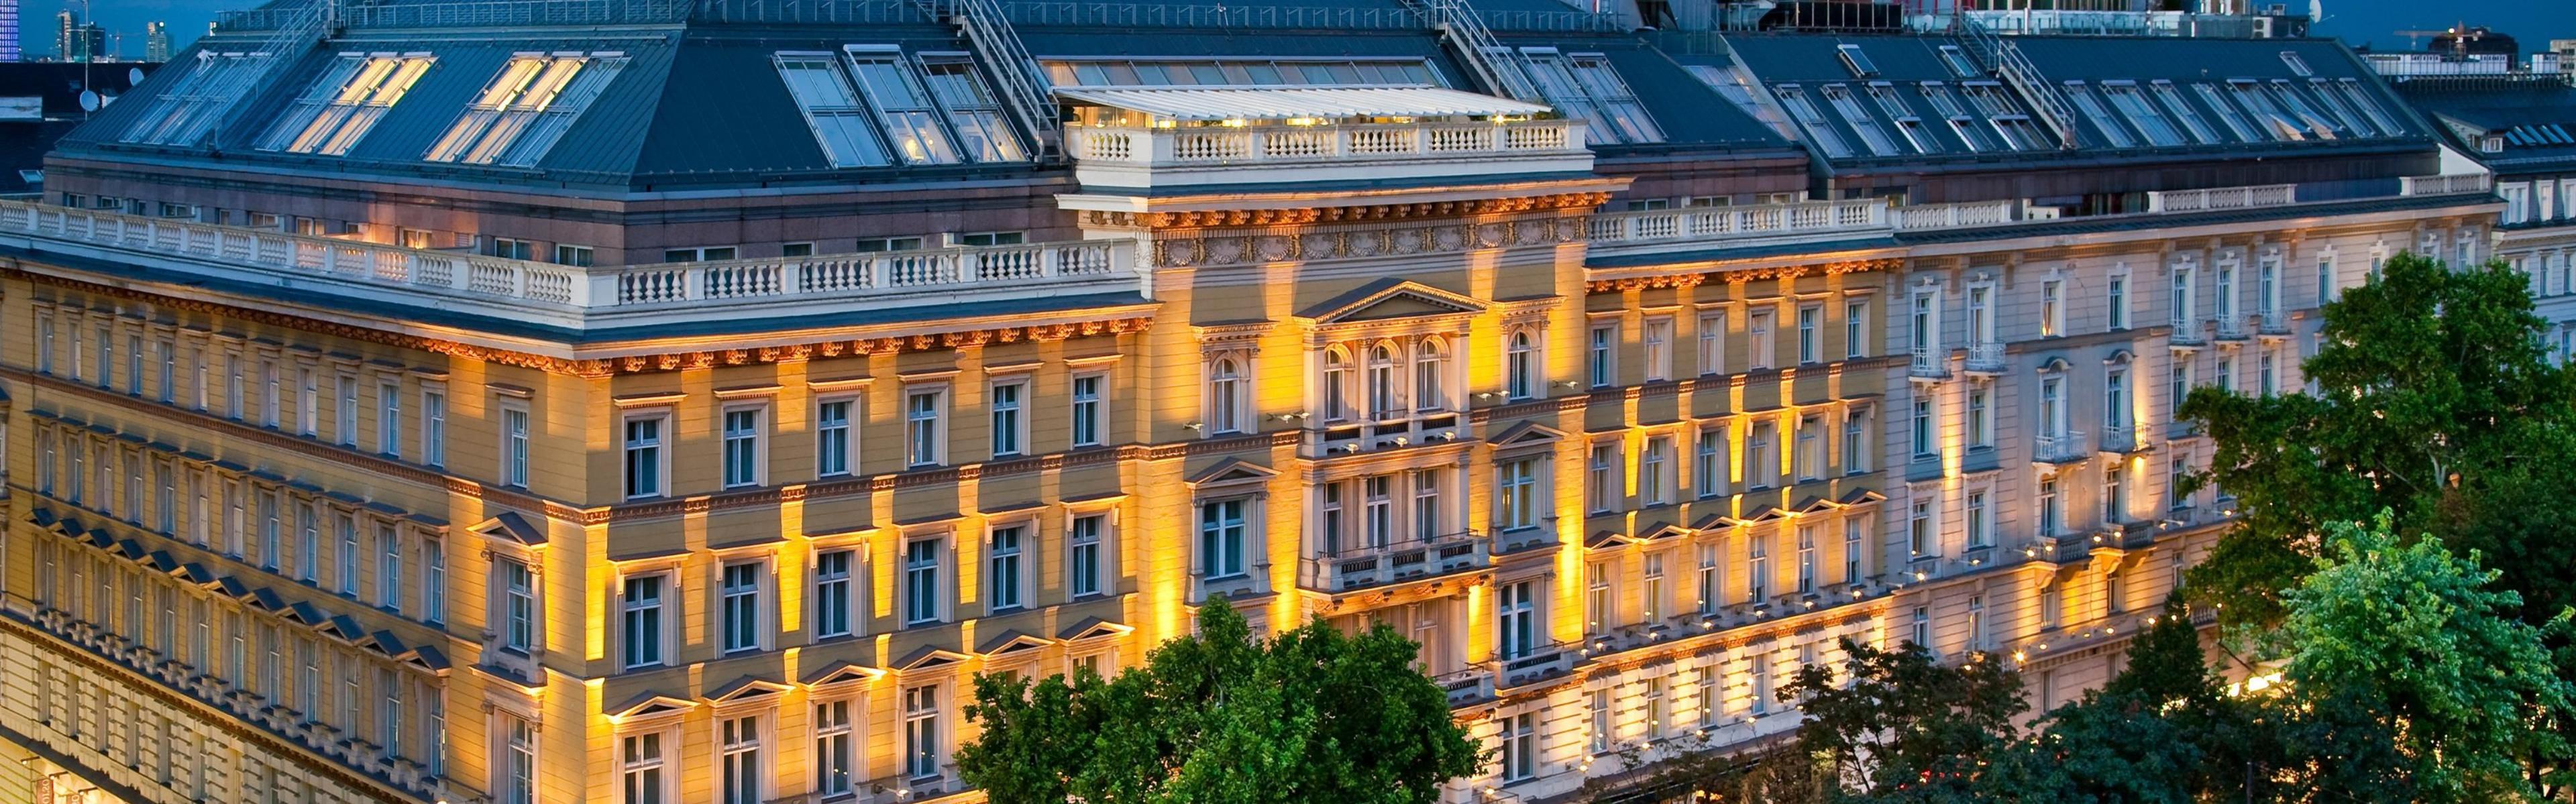 Grand Hotel Wien - Vienna, Austria